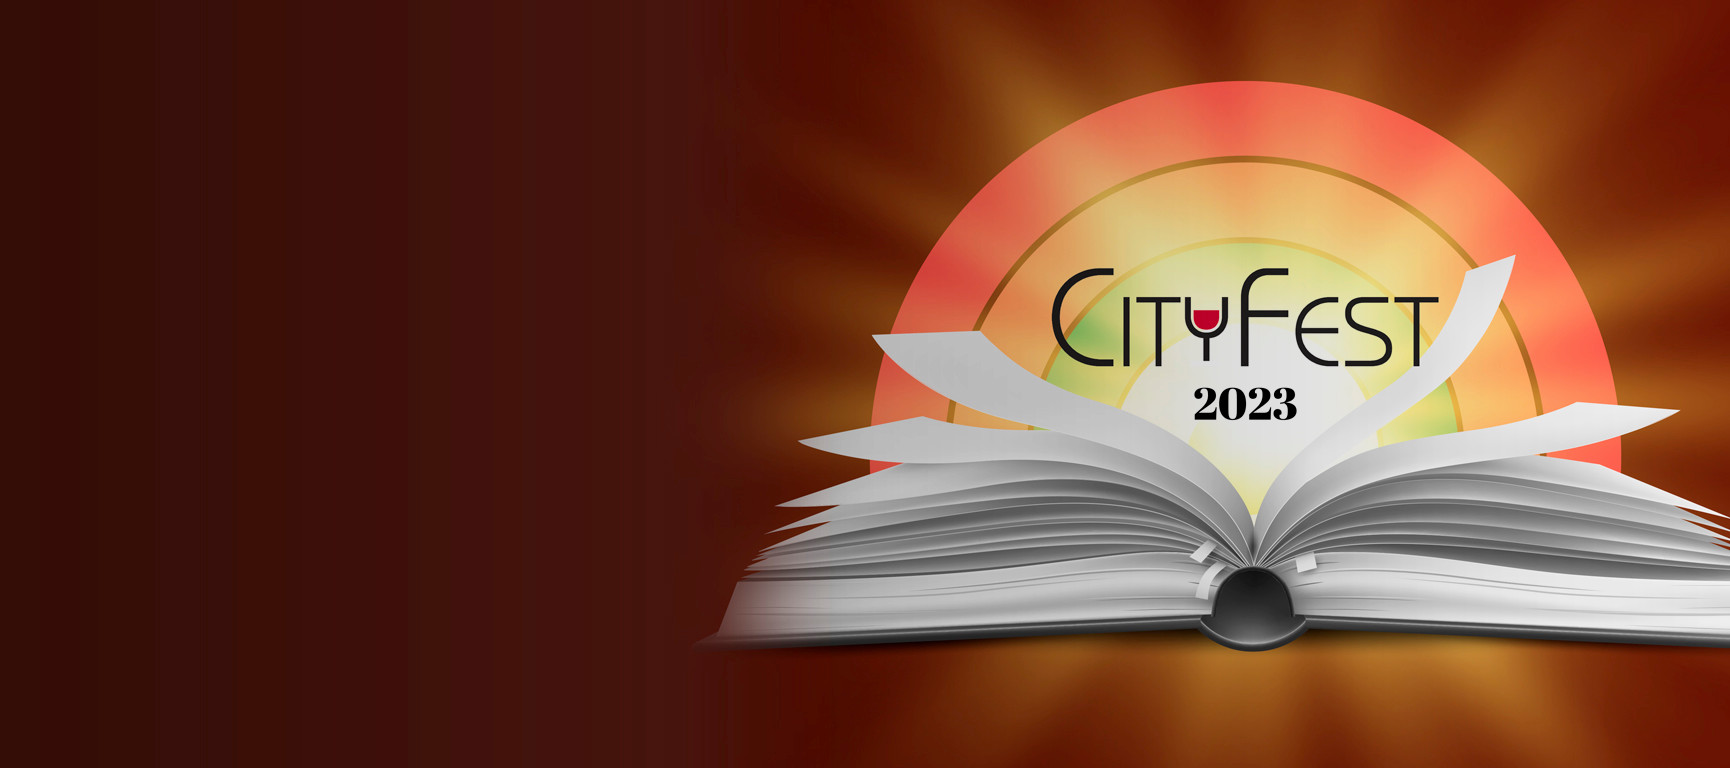 City Fest 2023 behind an open book